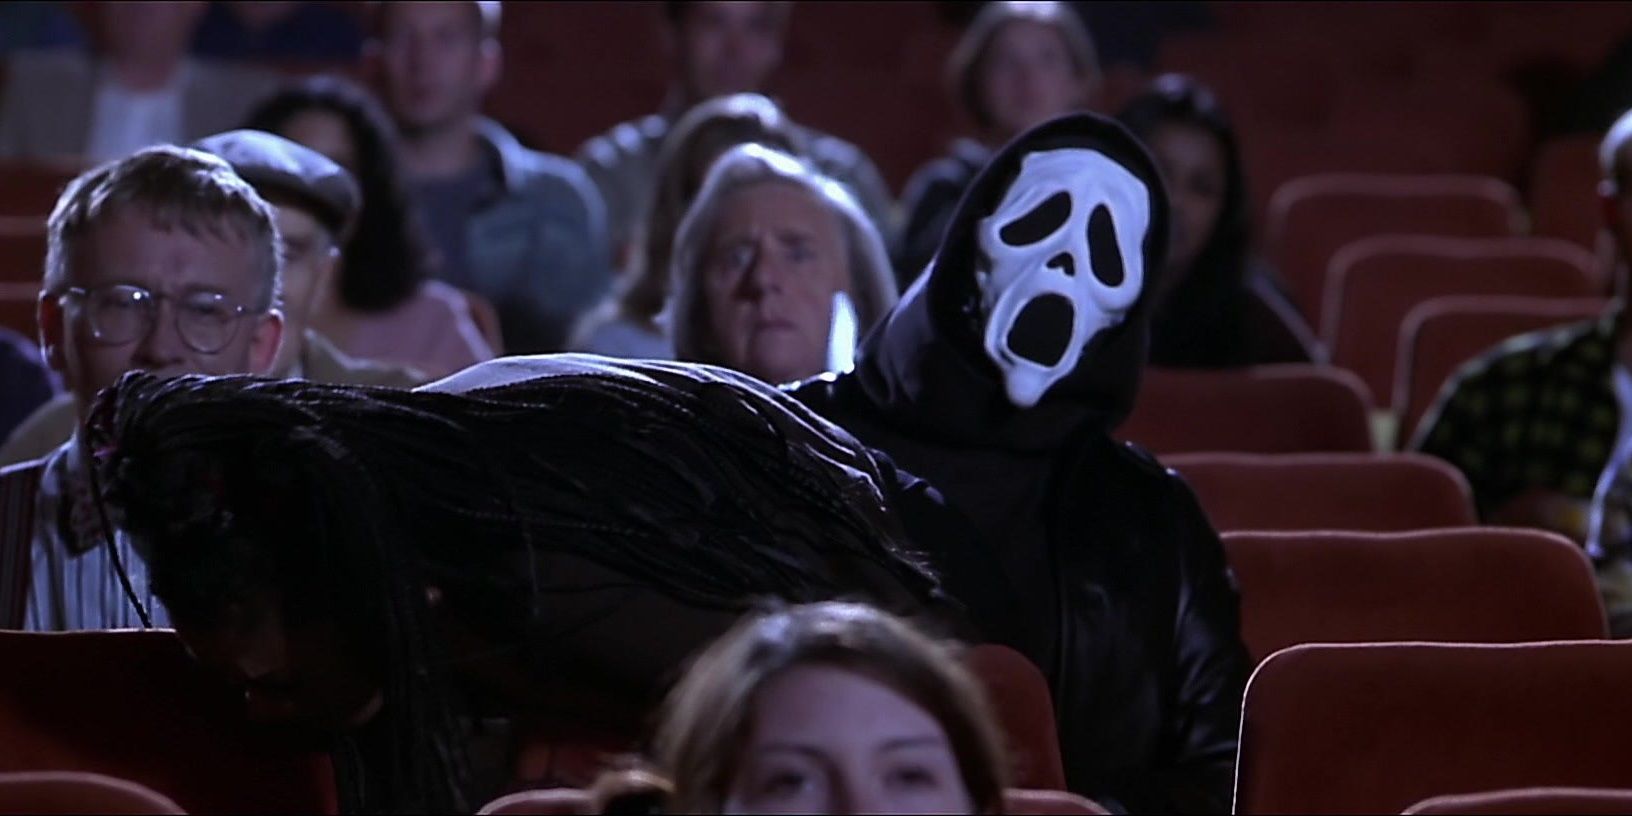 Призрачное лицо сидит в кинотеатре в фильме "Очень страшное кино"